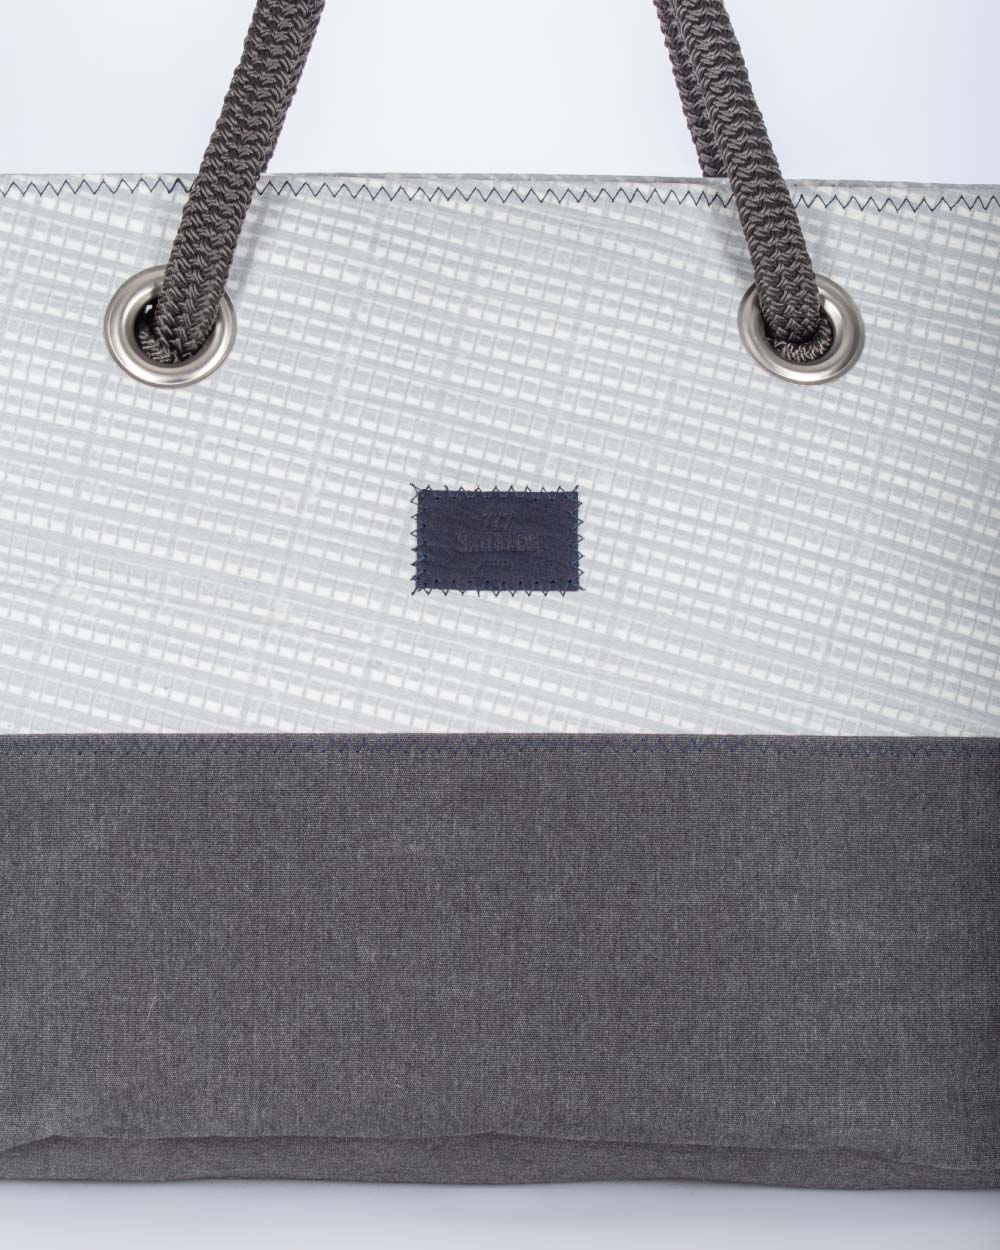 Damen Handtasche "Charlie" by 727 Sailbags / Segeltuch weiß / Boden grau / Motiv 6 blau